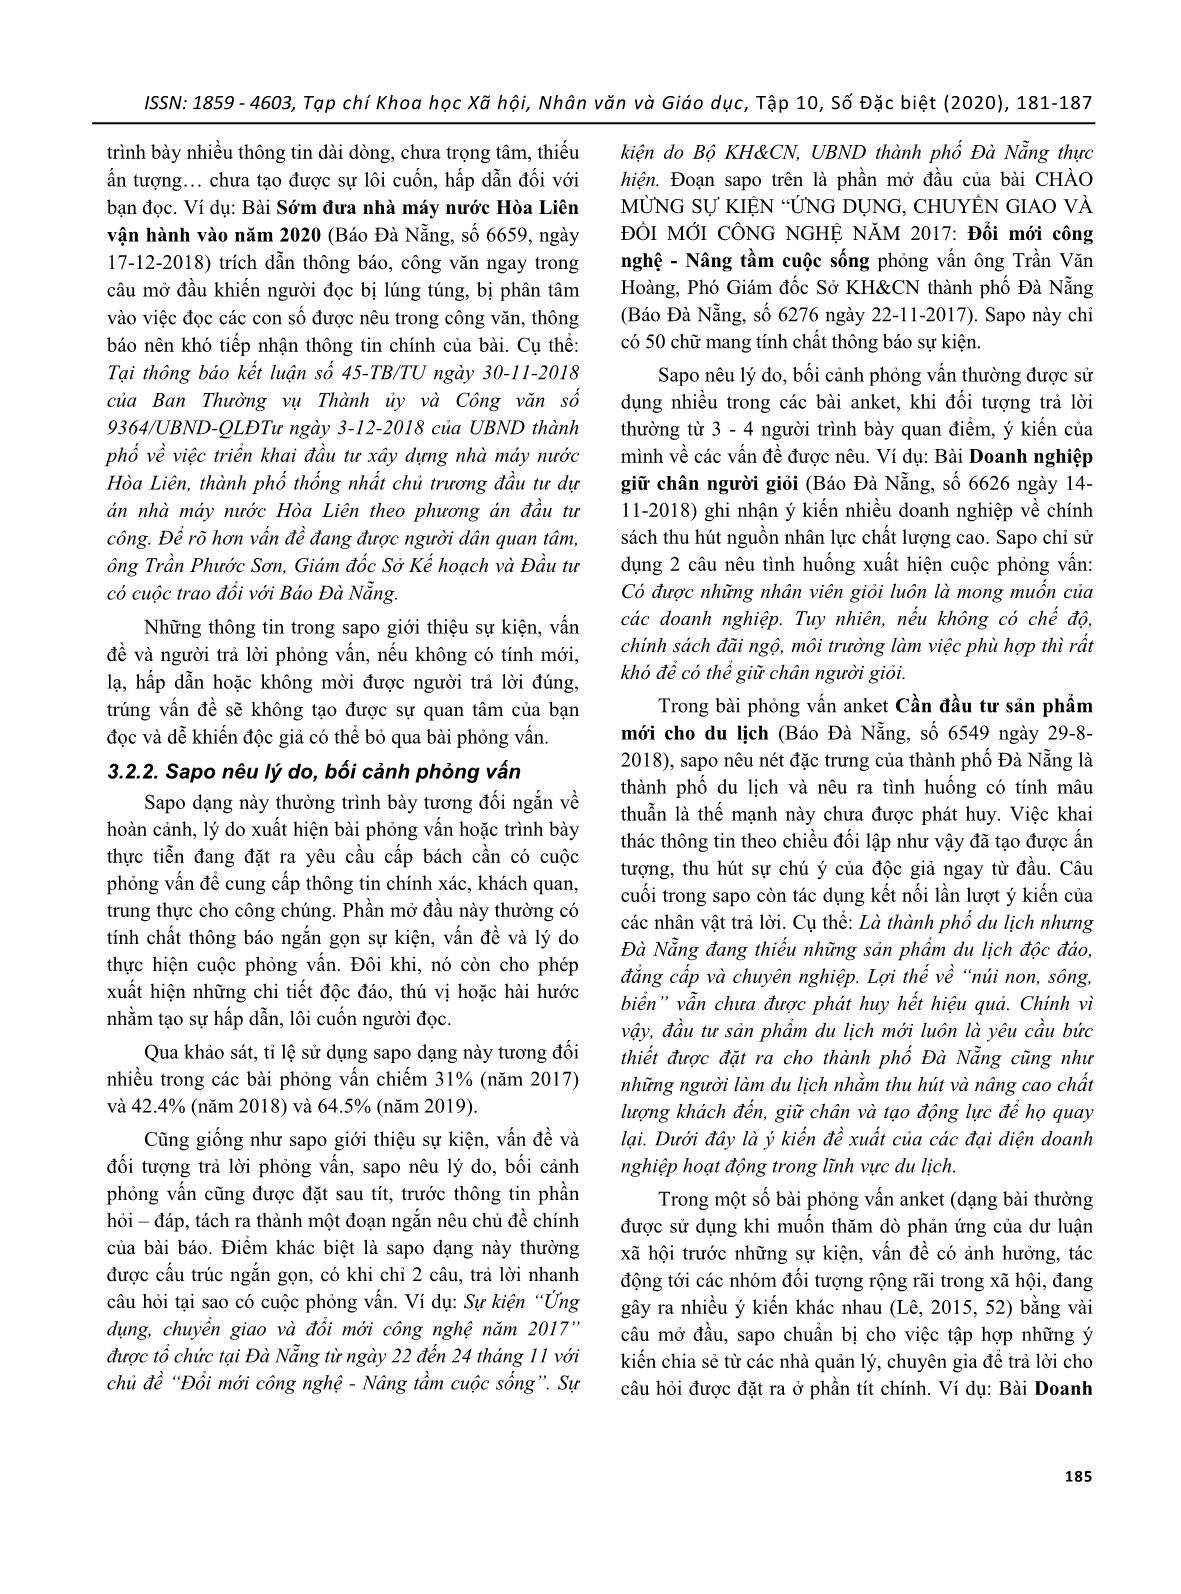 Lời mở đầu (sapo) trong tác phẩm phỏng vấn trên báo Đà Nẵng trang 5